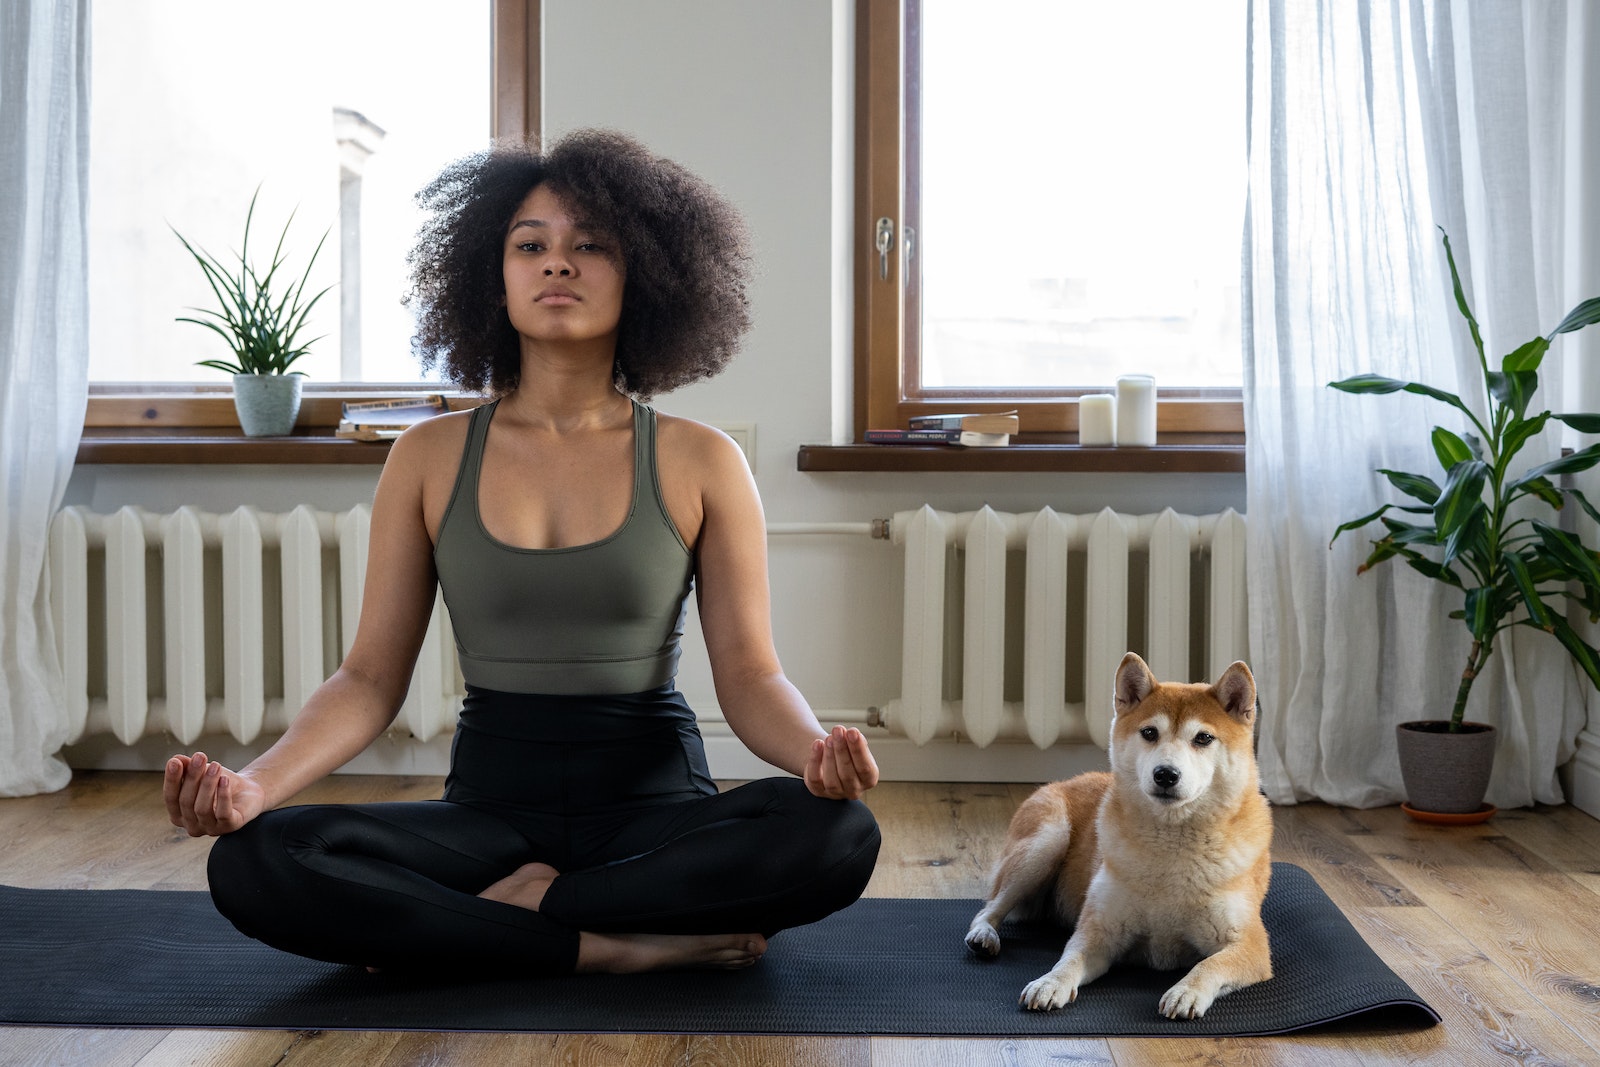 Trouvez votre équilibre intérieur grâce au Bikram yoga, une série de 26 poses statiques dans une pièce chauffée.